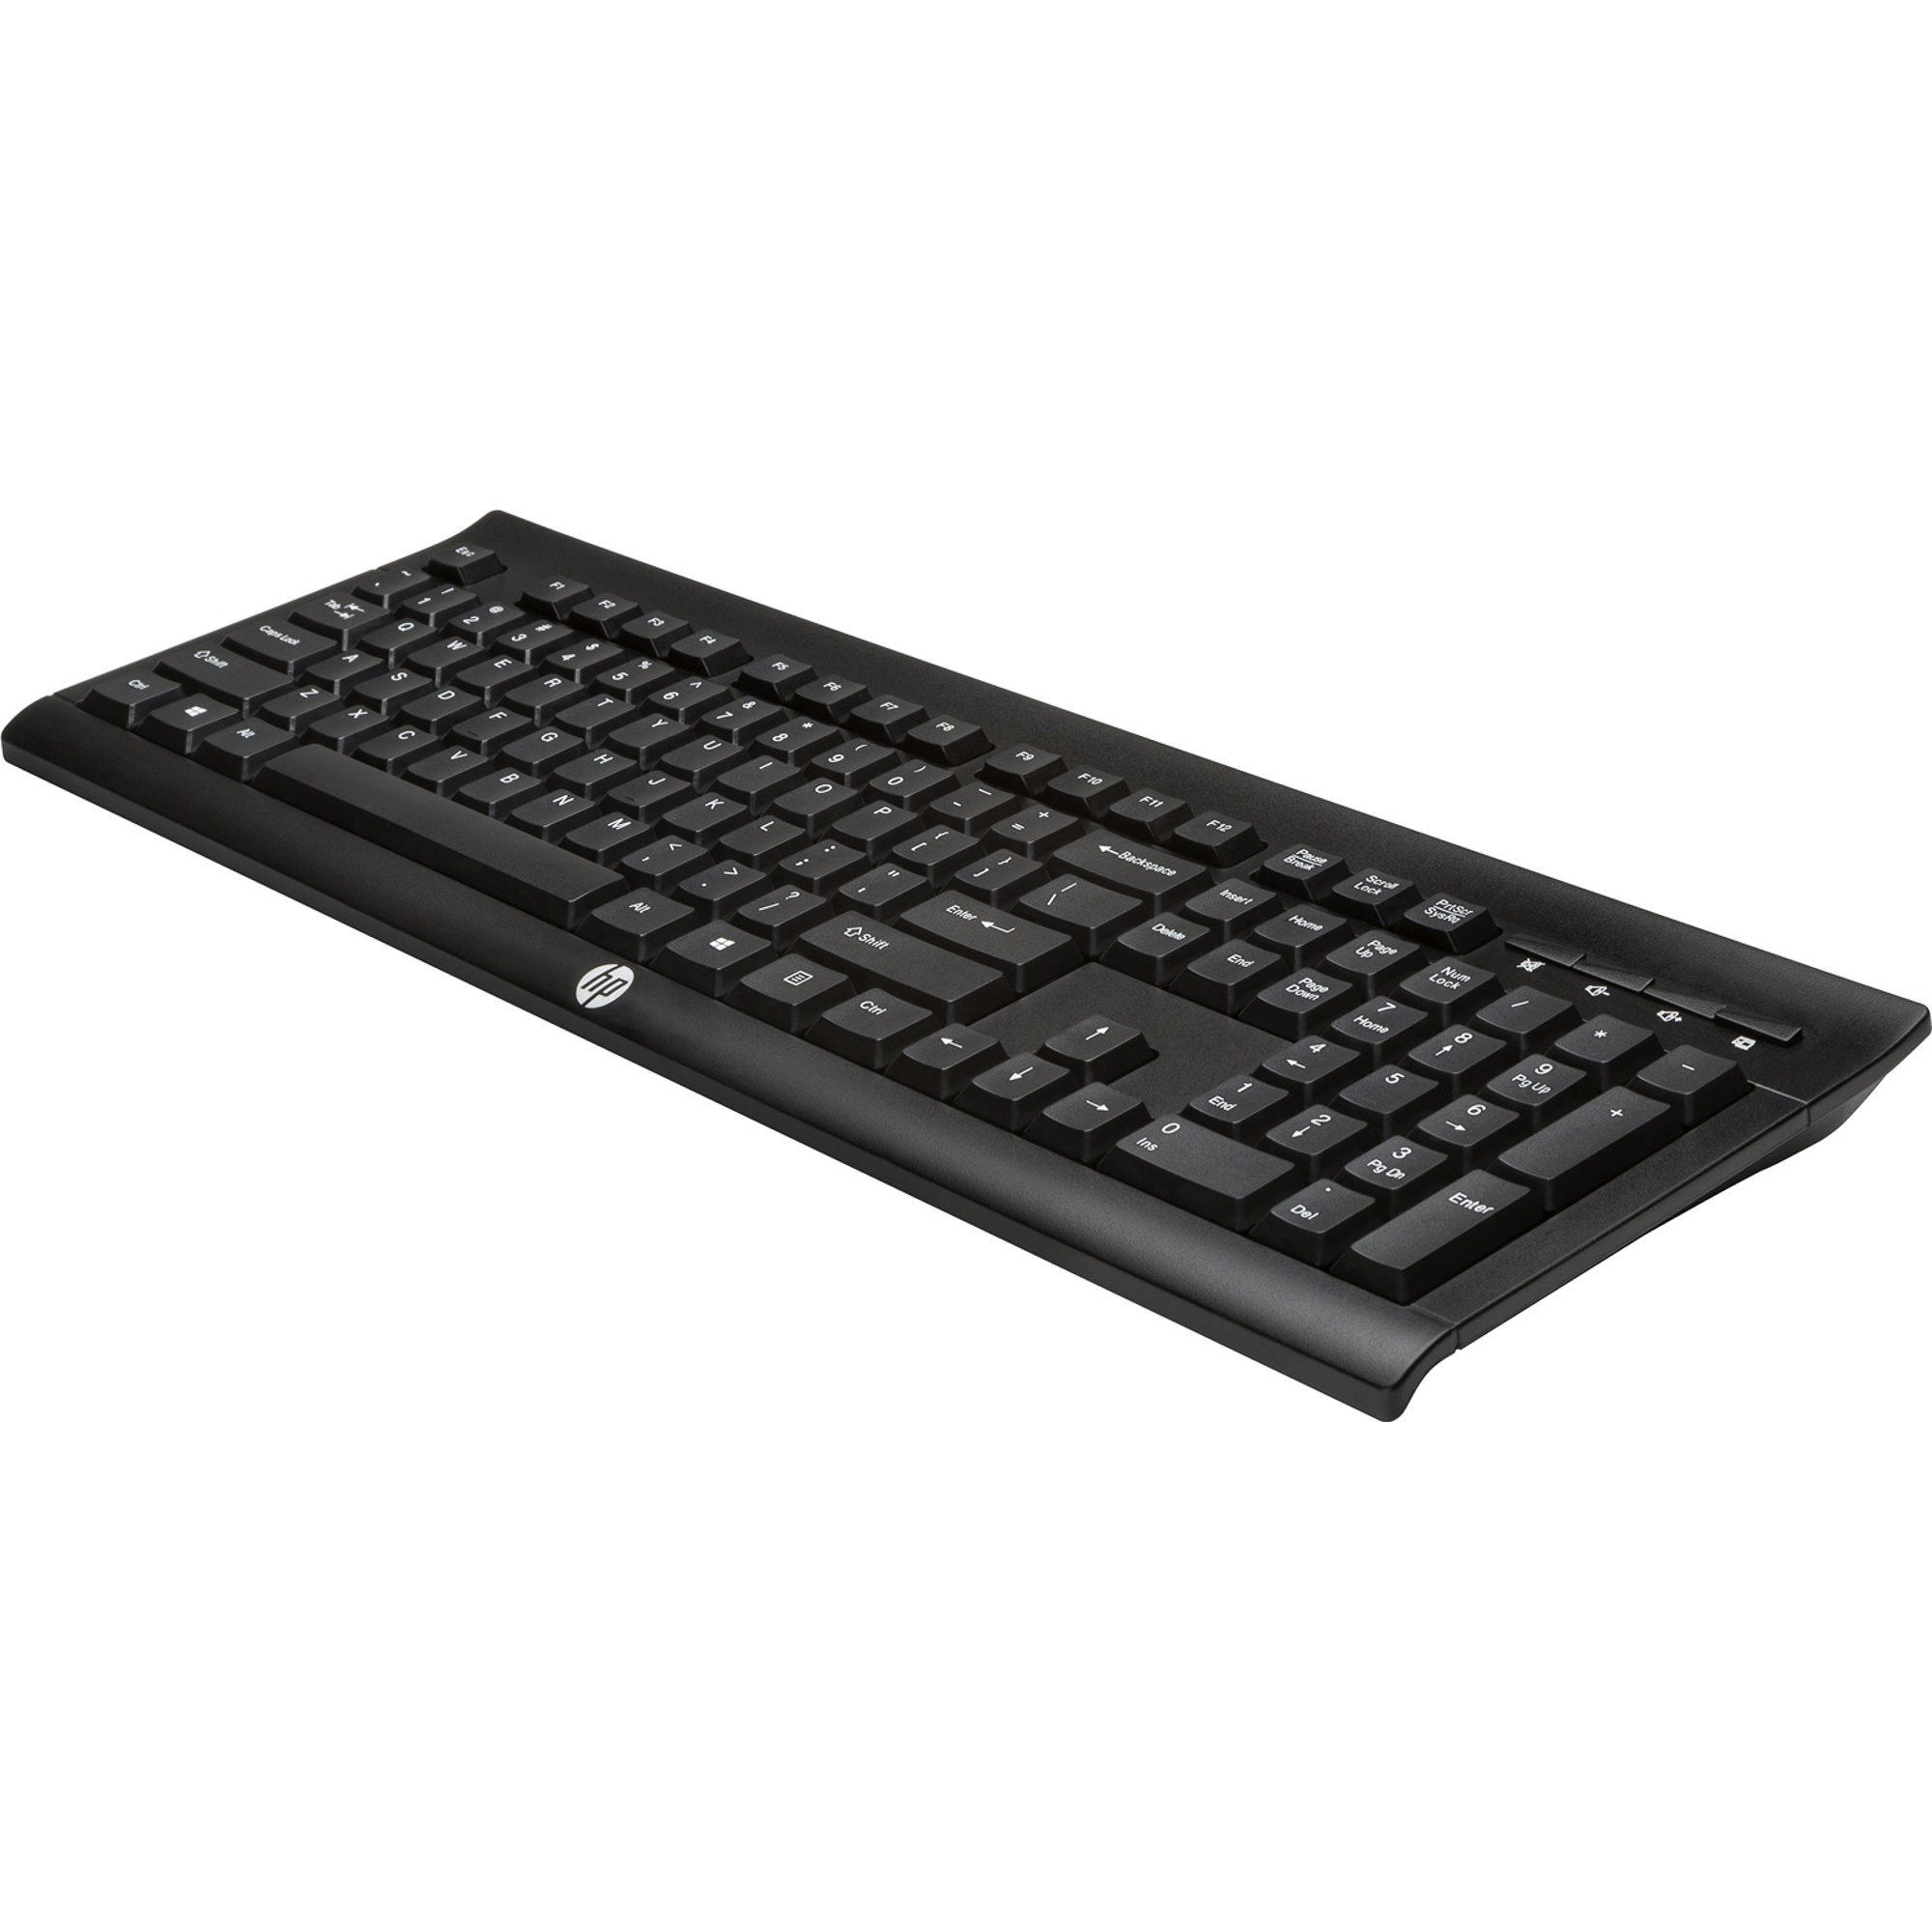 Клавиатура HP K2500 (E5E78AA)